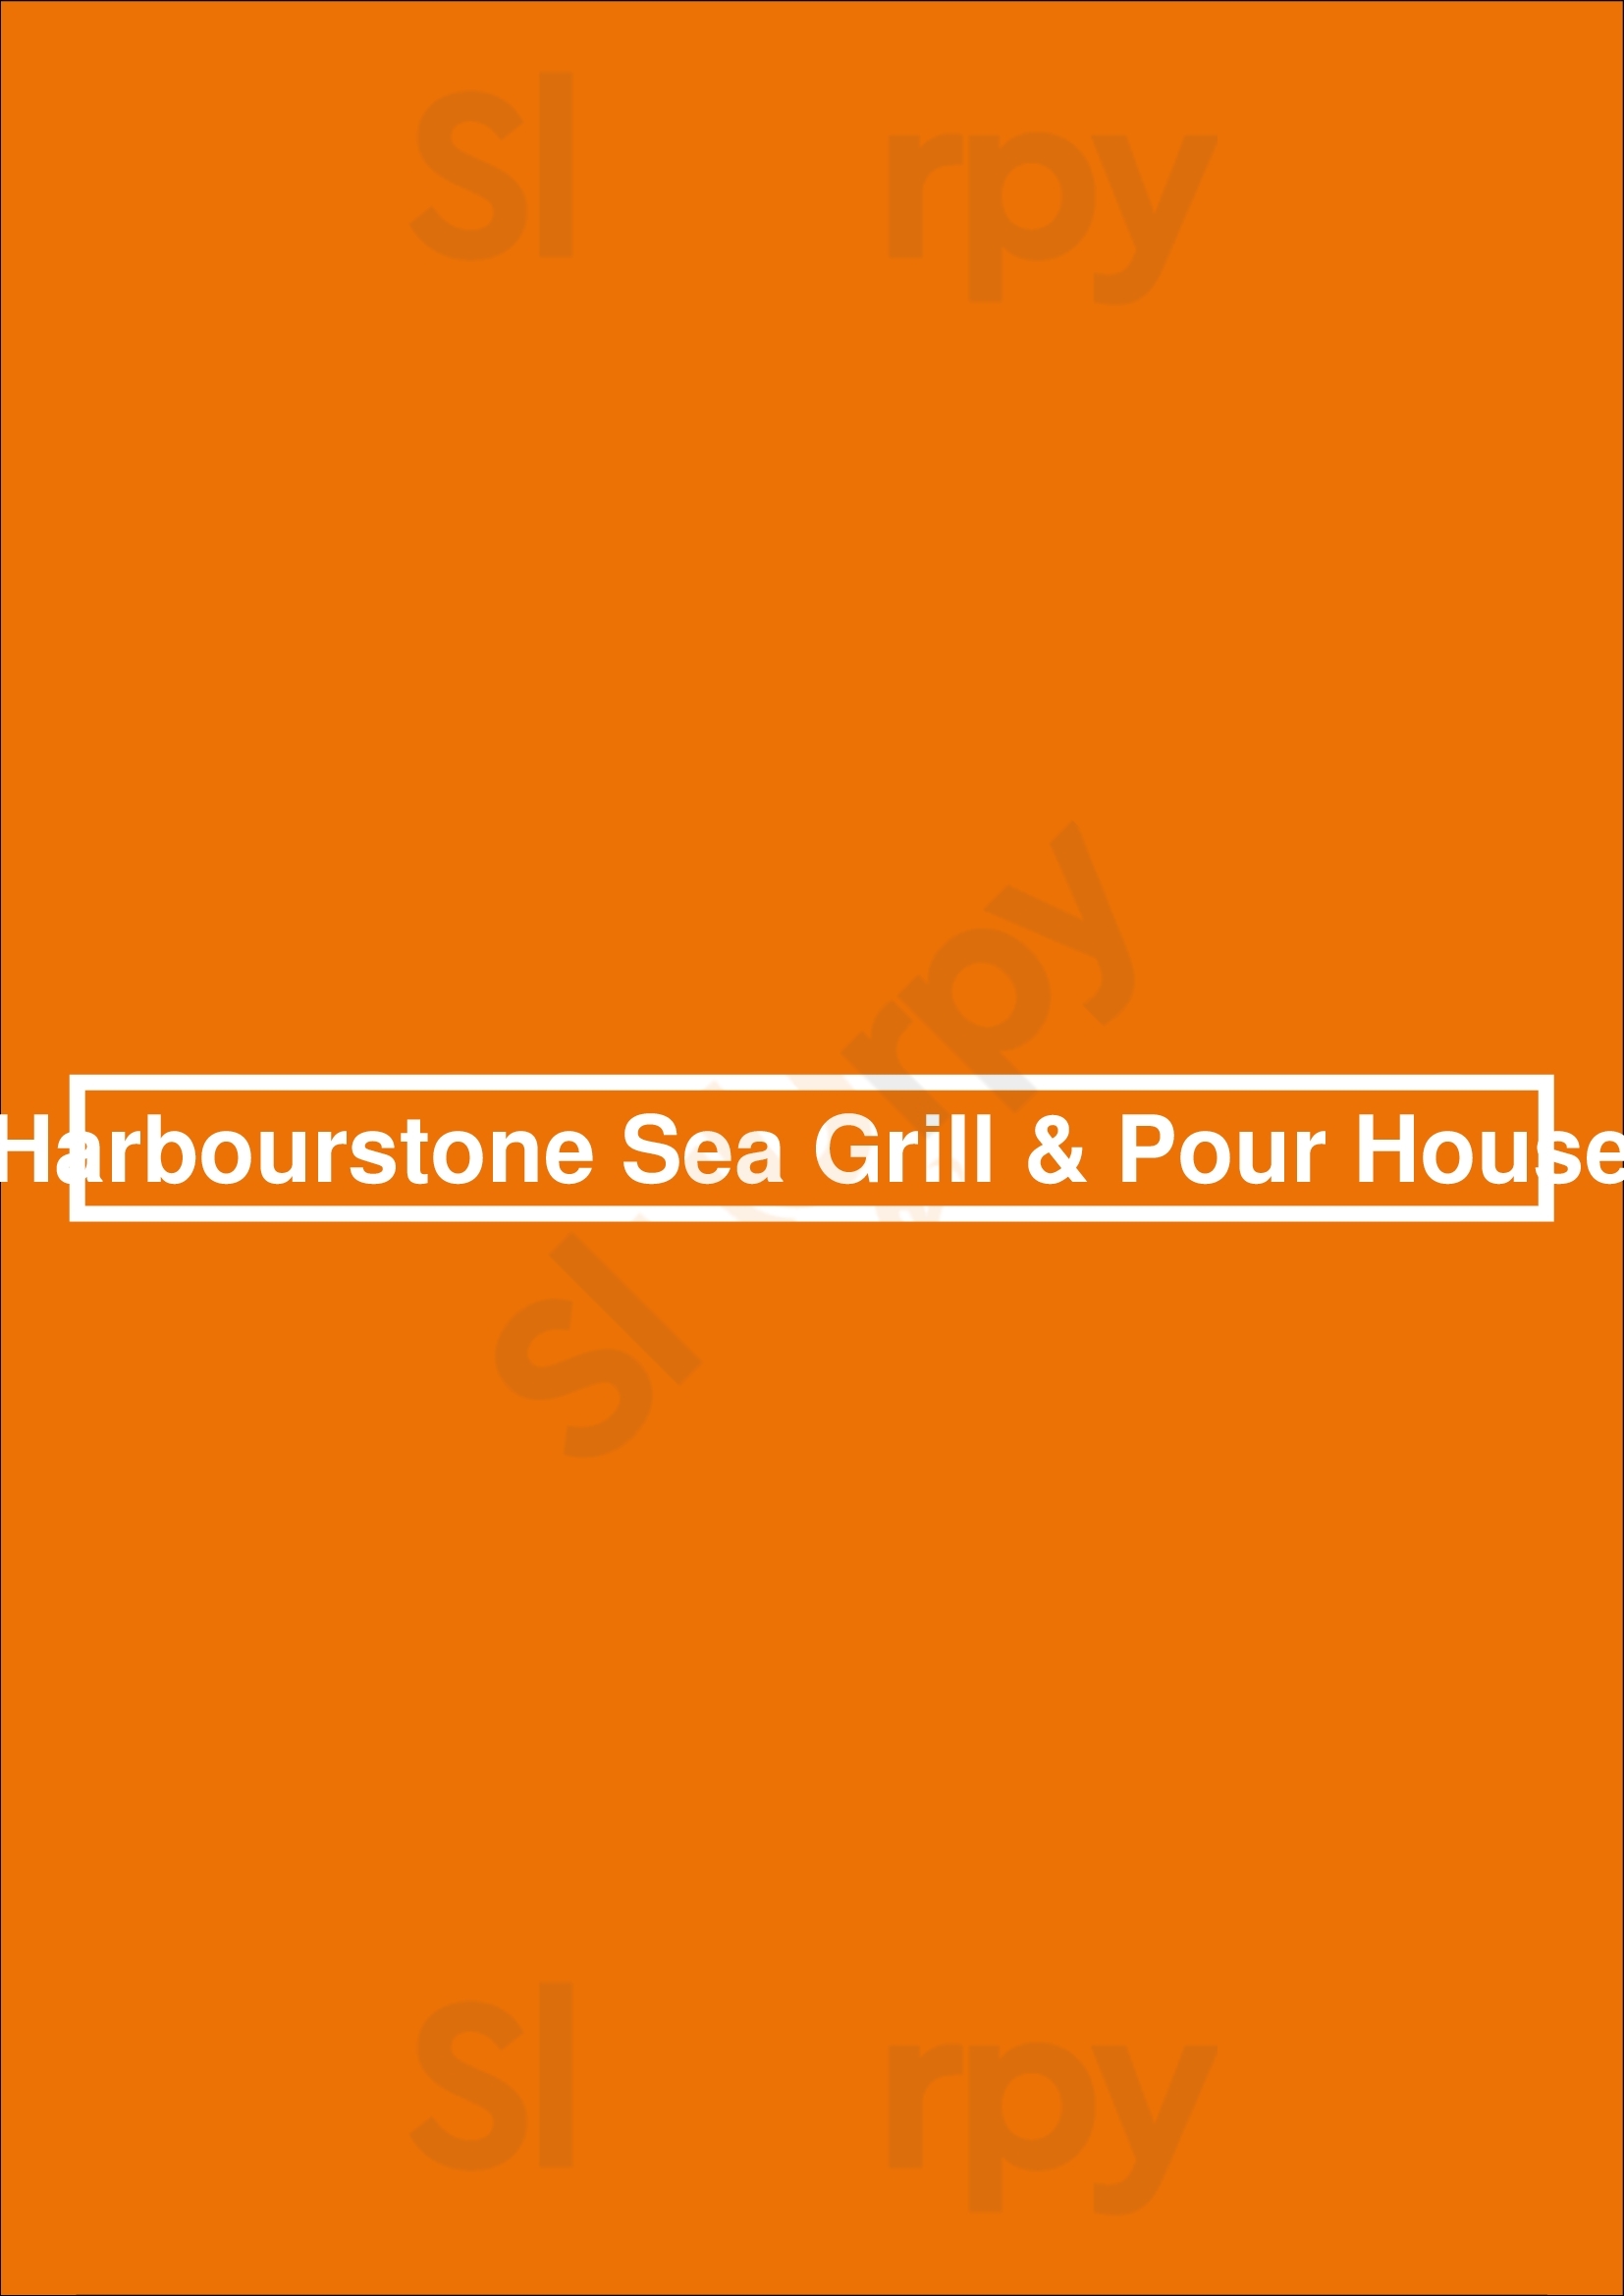 Harbourstone Pour House Halifax Menu - 1